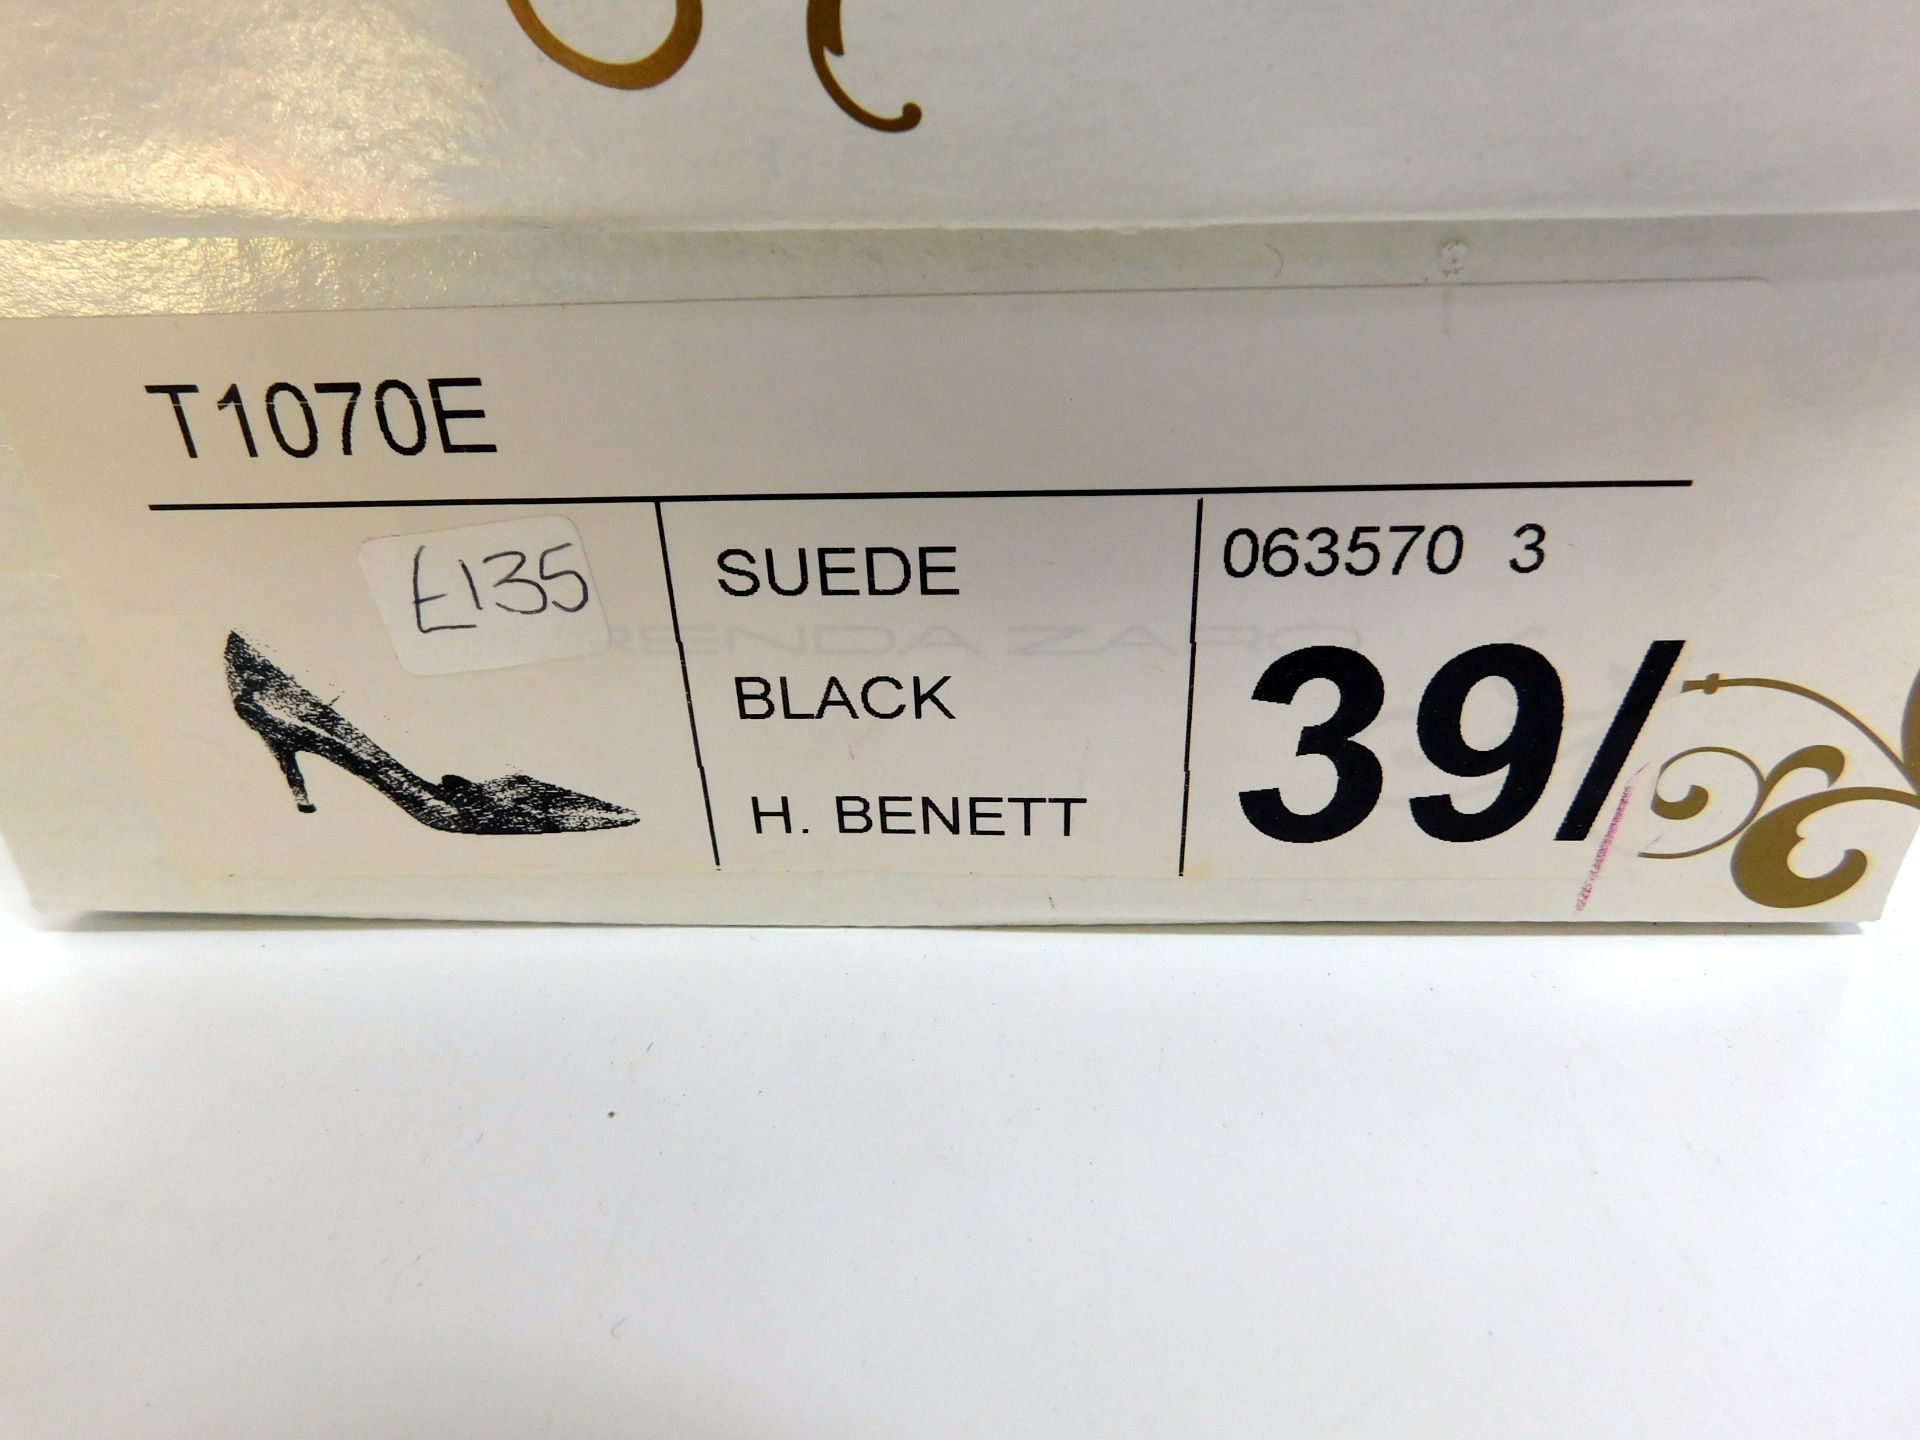 Brenda Zaro H. Bennet Women’s Heels, Model: T1070E, Style: 063570/3, Shade: Black Suede, Size 39/ ( - Image 2 of 2